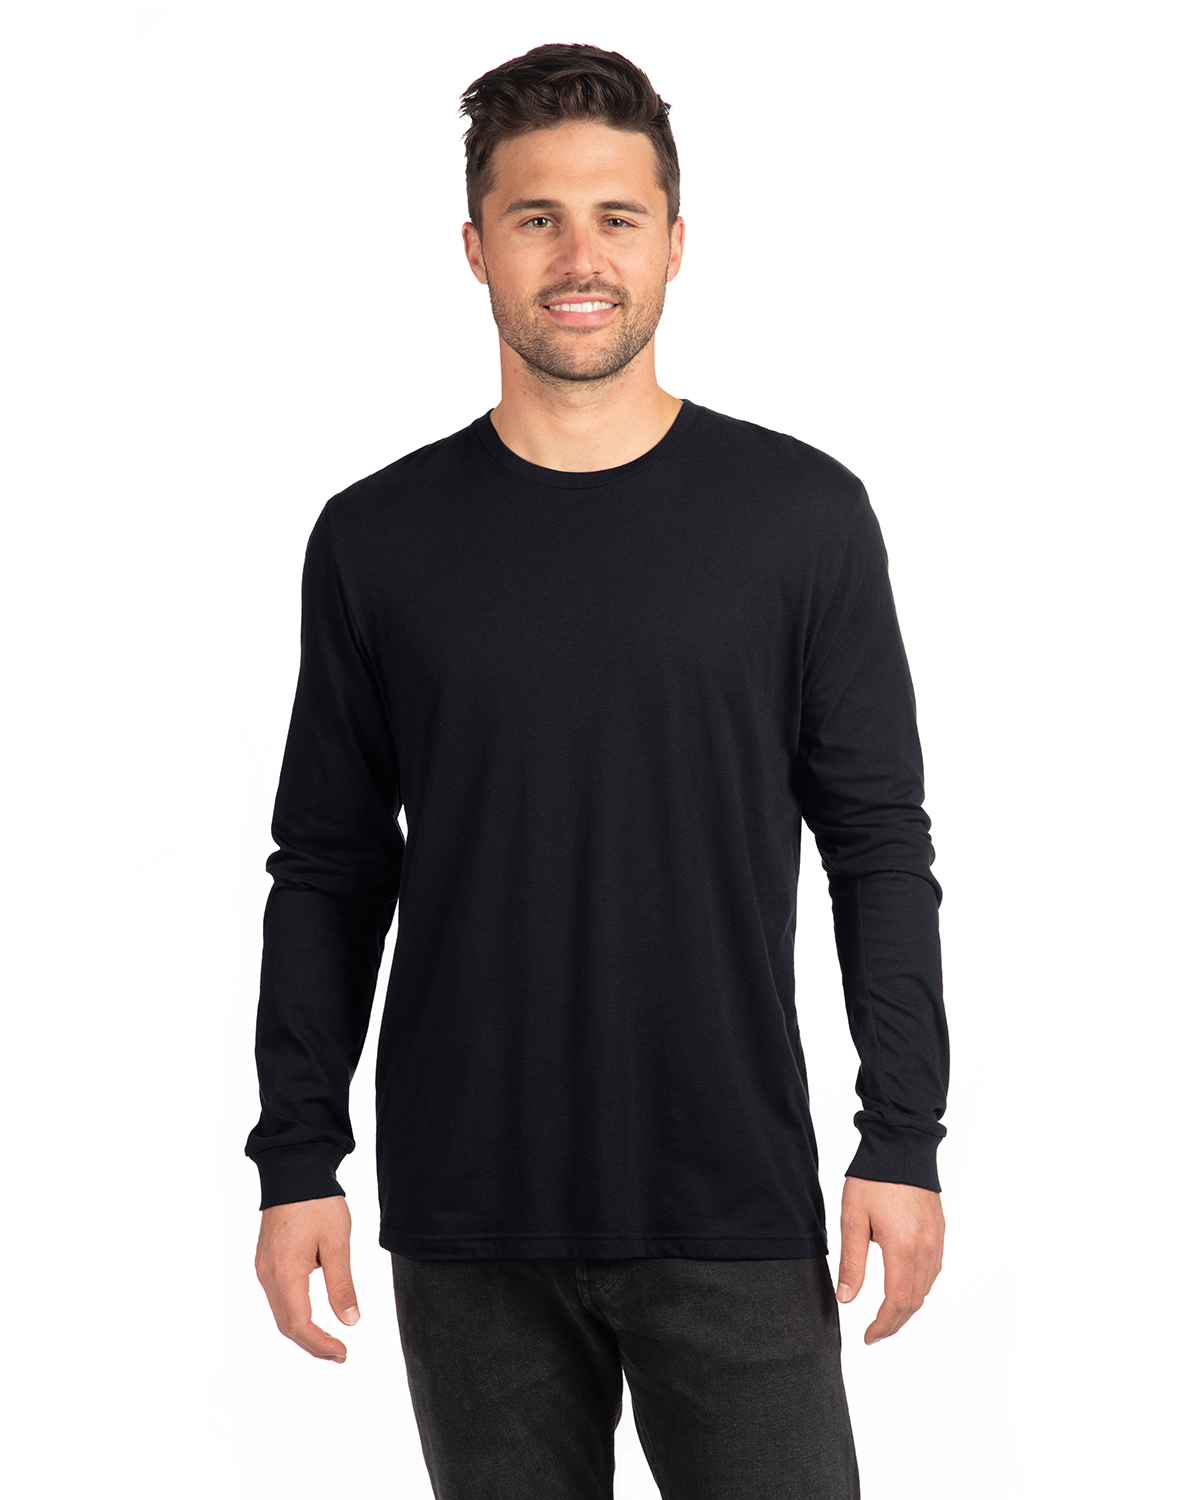 Next Level 6211 Nl Adult Cvc Long Sleeve T Shirt | Jiffy Shirts